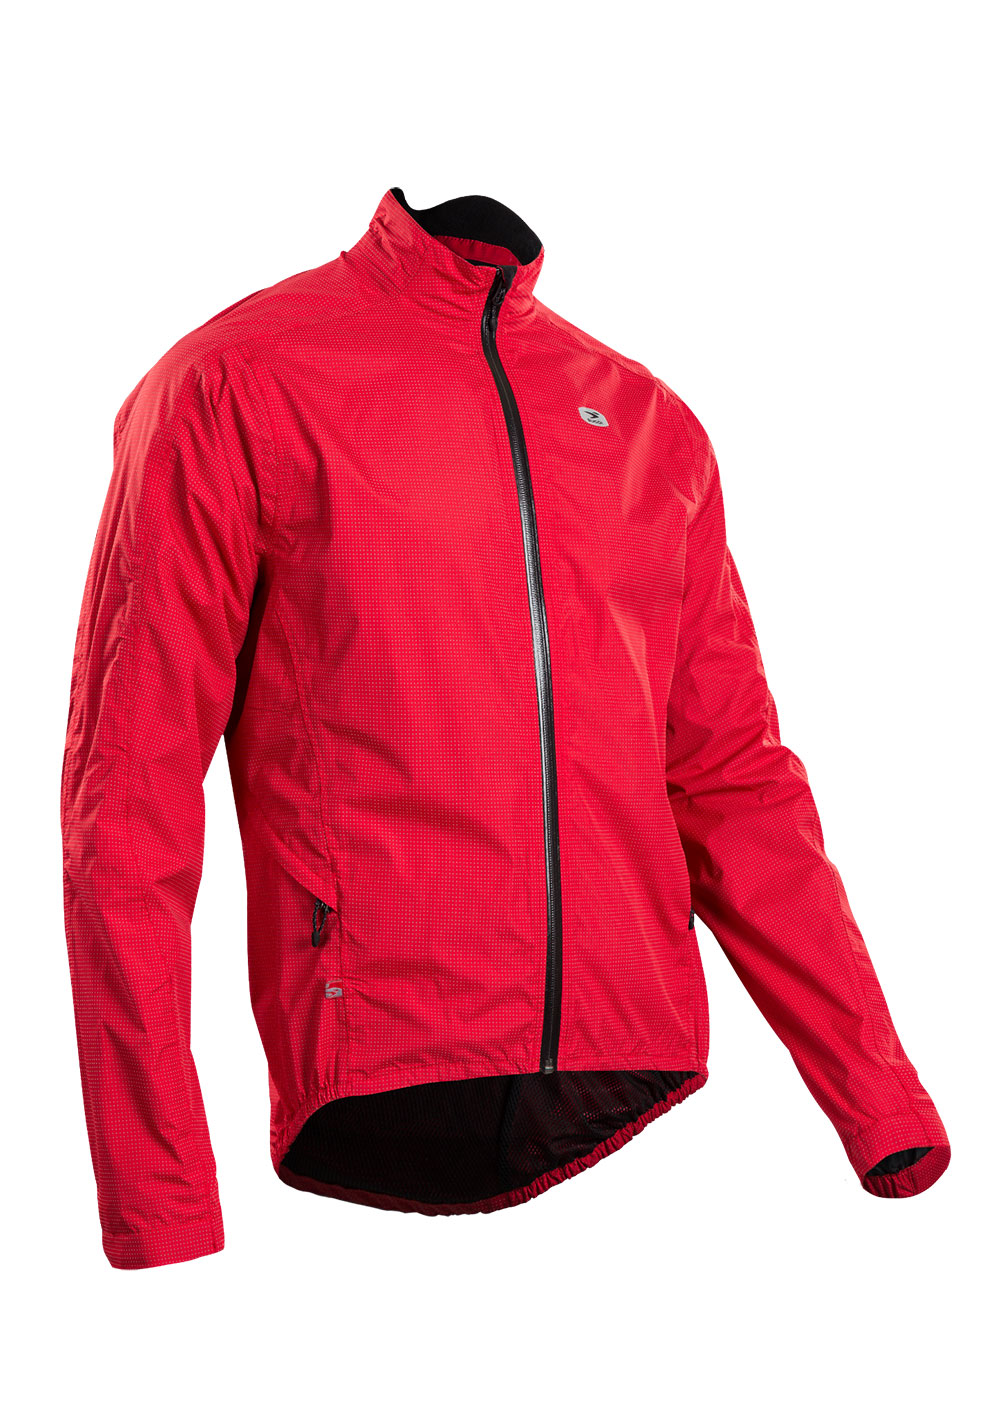 Куртка Sugoi ZAP BIKE, светоотражающая ткань, мужская, CHI (красная), L фото 